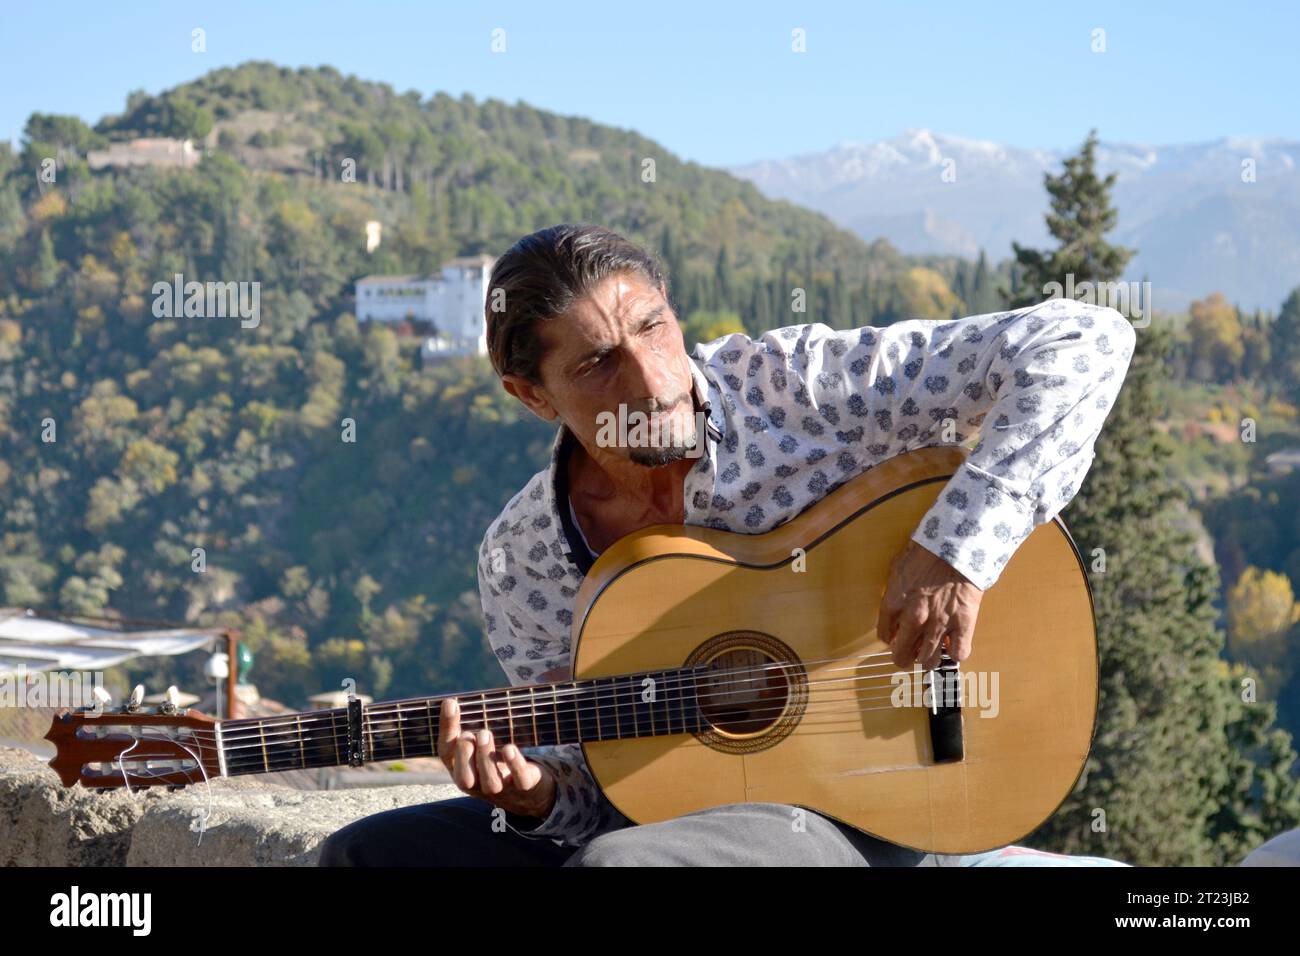 GRENADE, ESPAGNE - 12 NOVEMBRE 2015 : musicien de rue flamenco au Mirador de San Nicolas, un point de vue célèbre dans le quartier d'Albaicin Banque D'Images